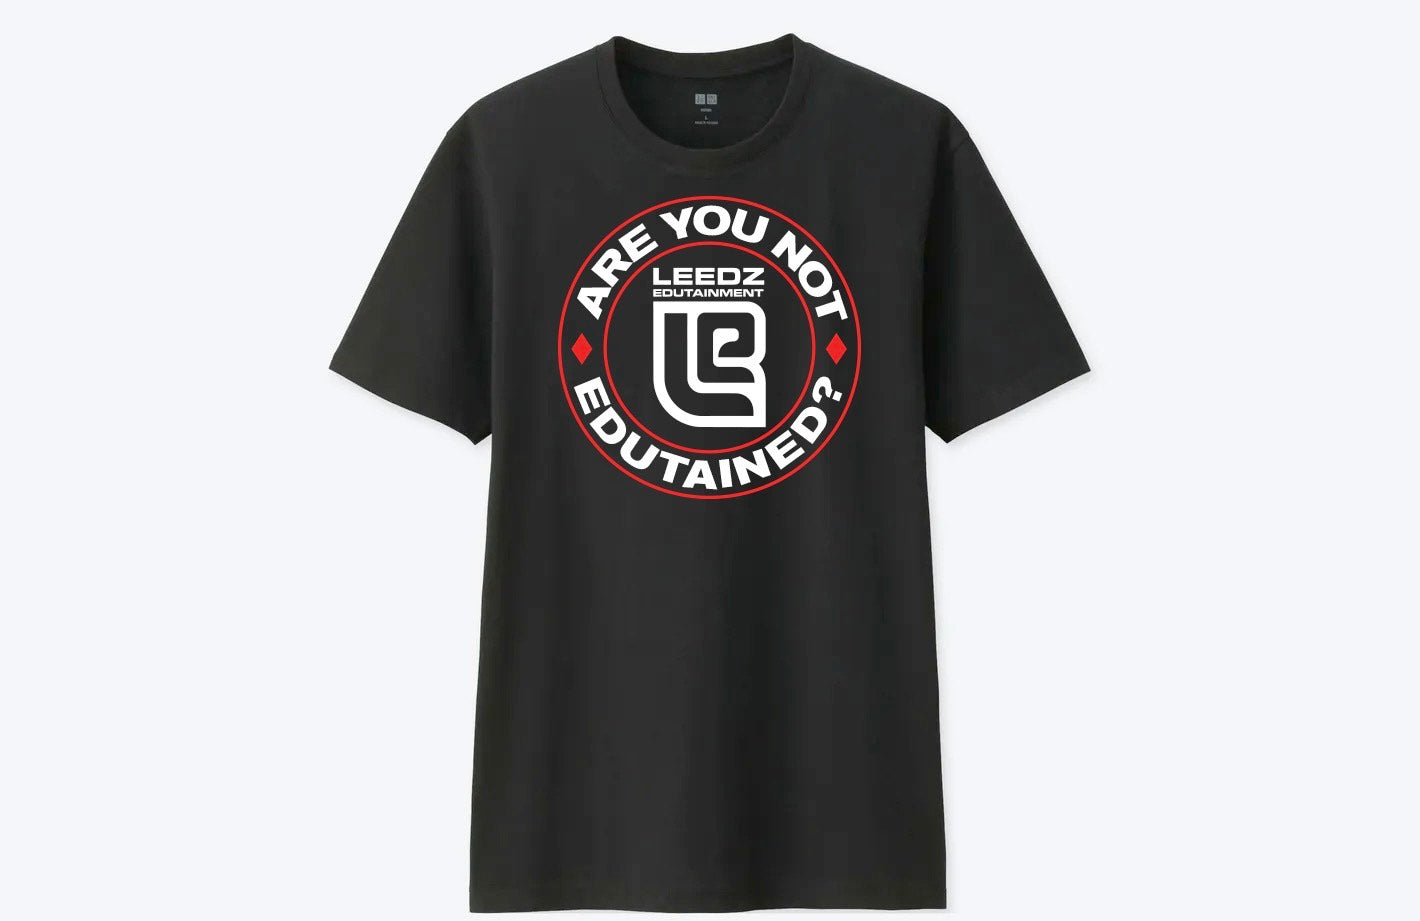 Leedz Edutainment "Are You Not Edutained?" T-Shirt